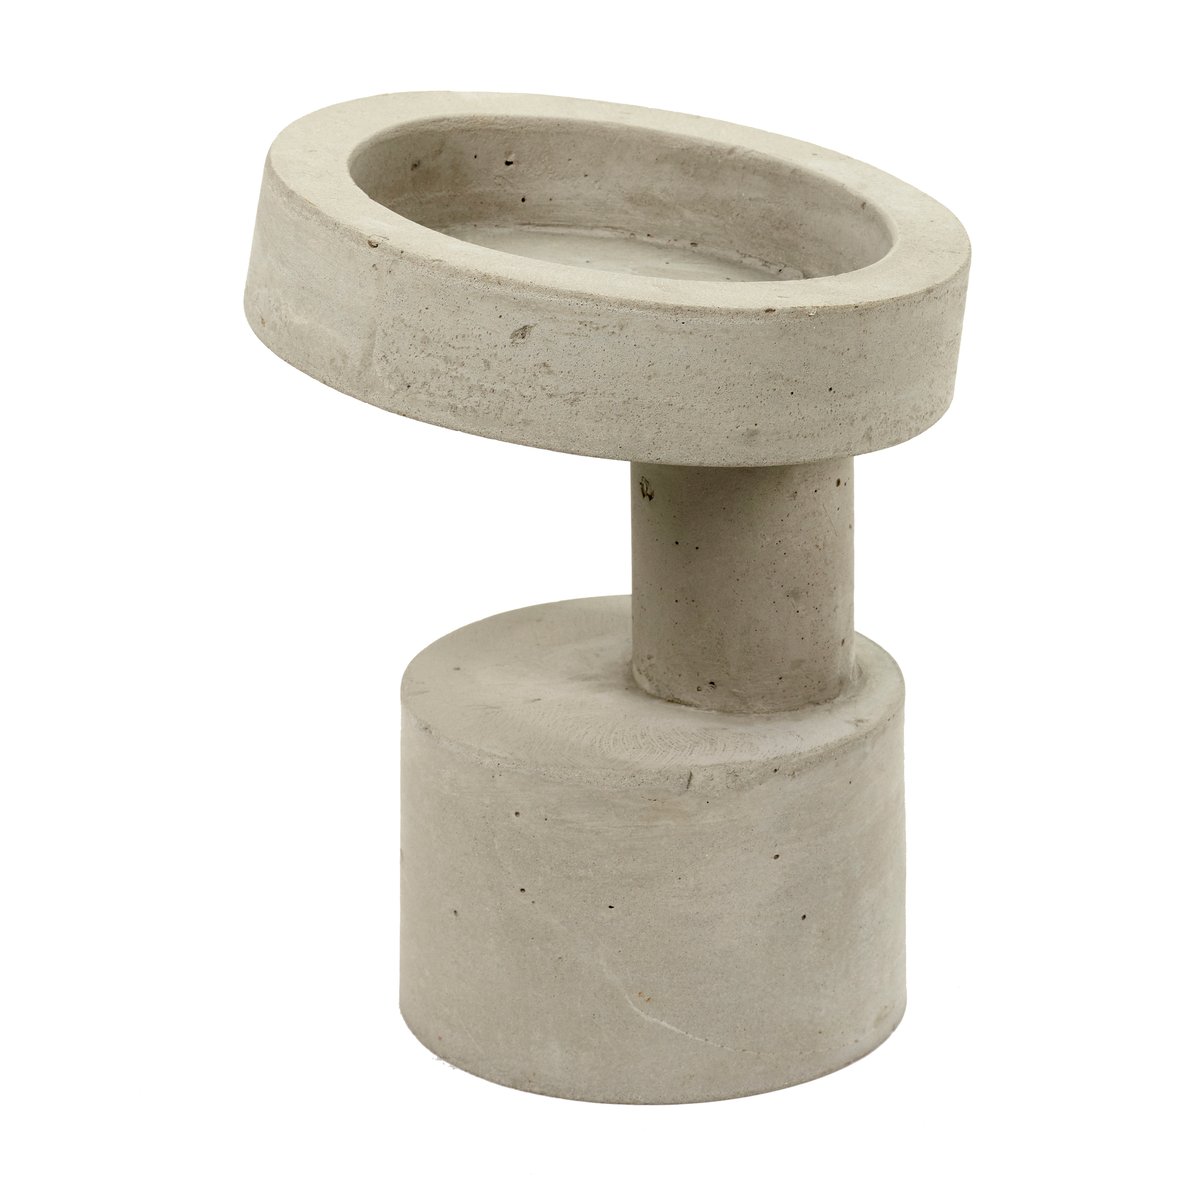 Bilde av Serax FCK vase sement Ø22 cm Cement